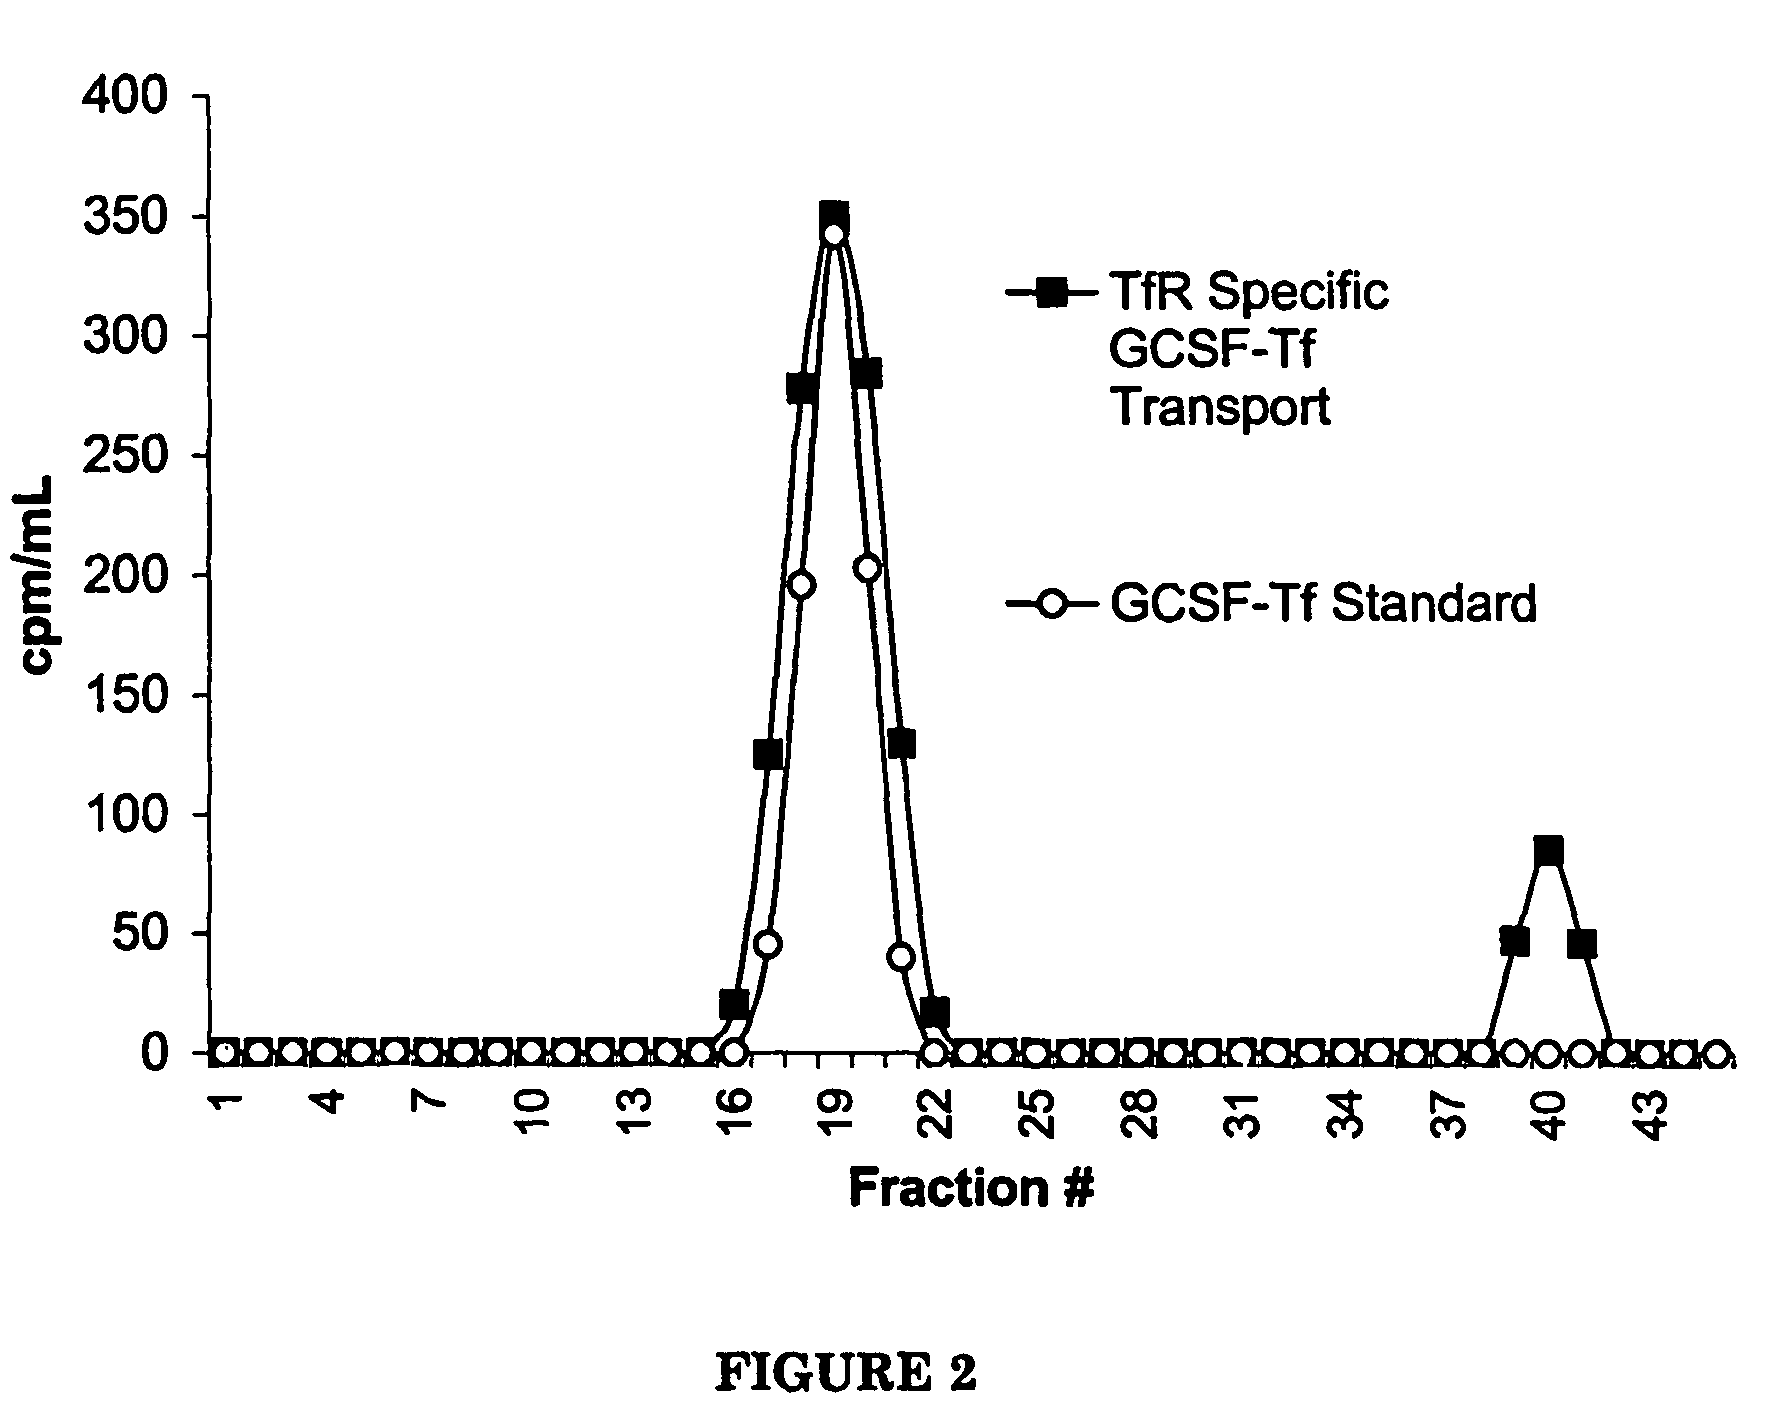 G-CSF transferrin fusion proteins